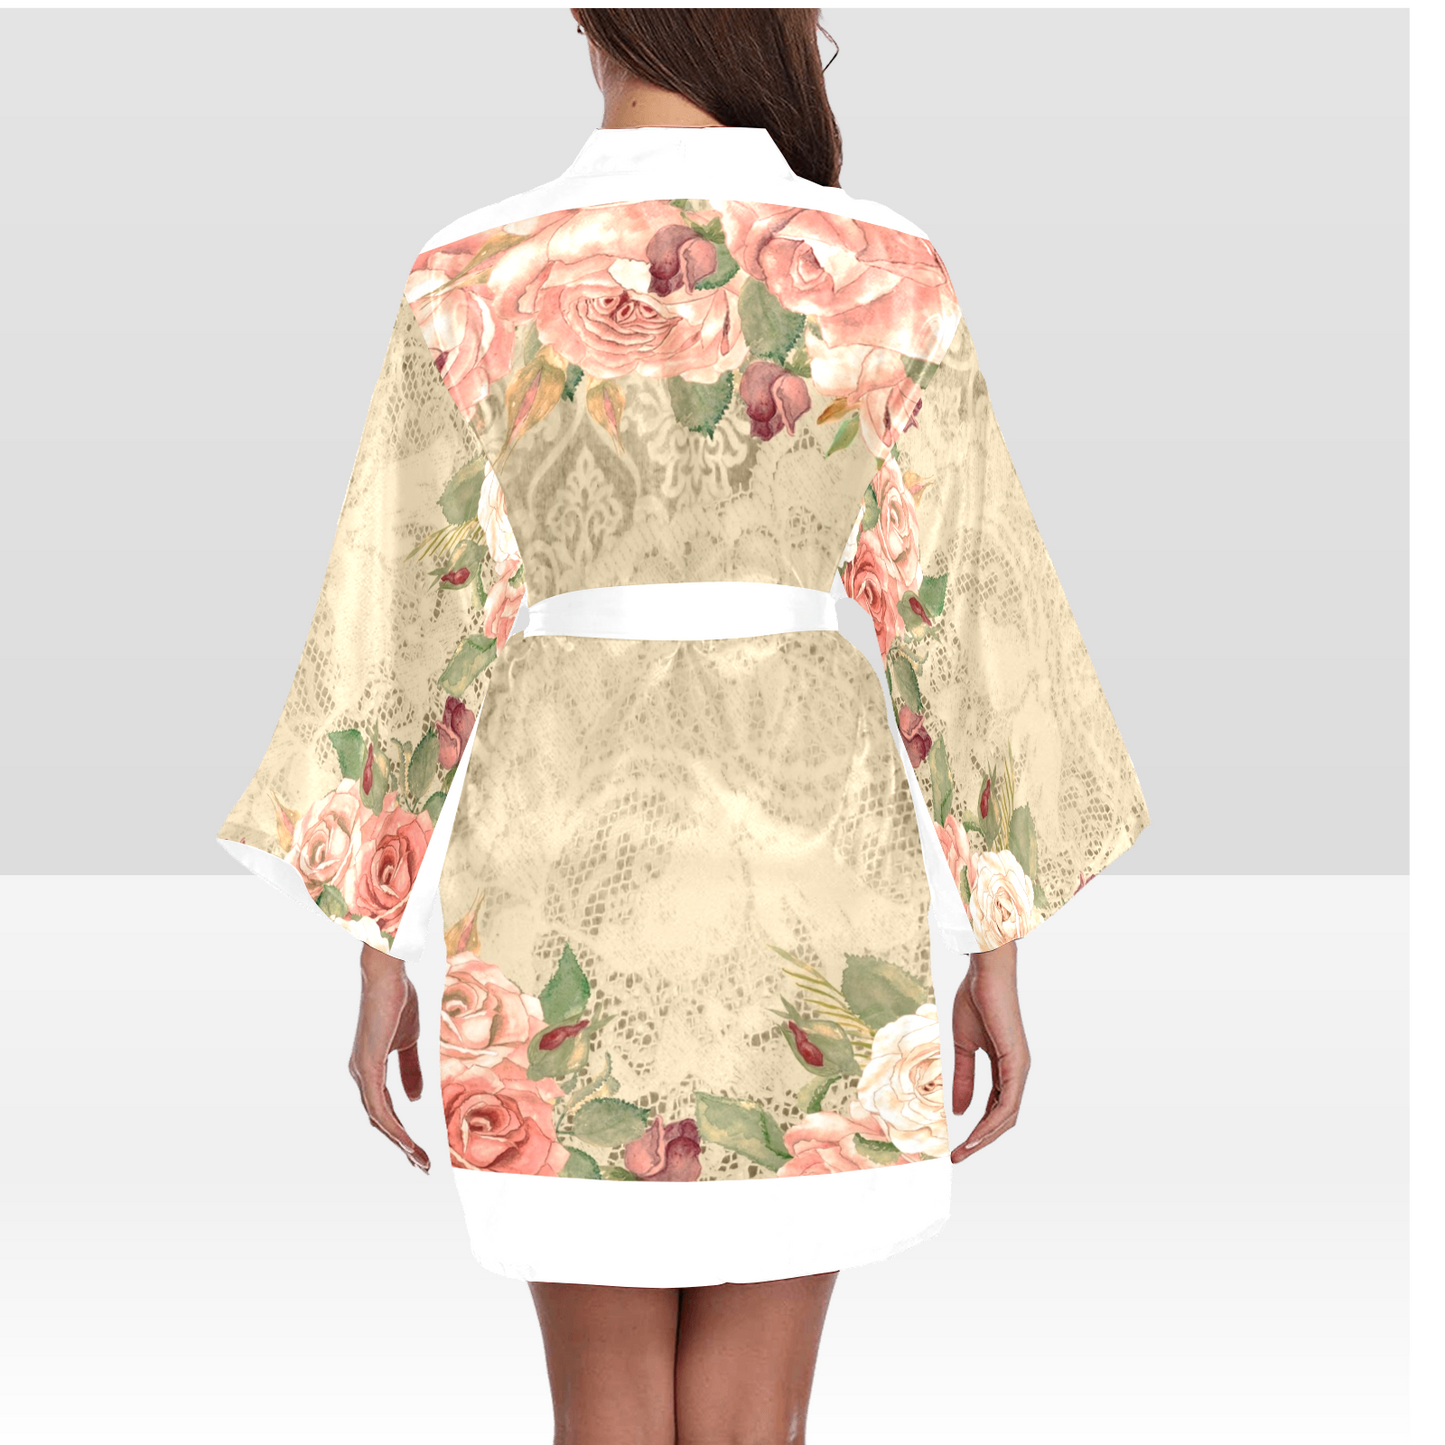 Victorian Lace Kimono Robe, Black or White Trim, Sizes XS to 2XL, Design 25